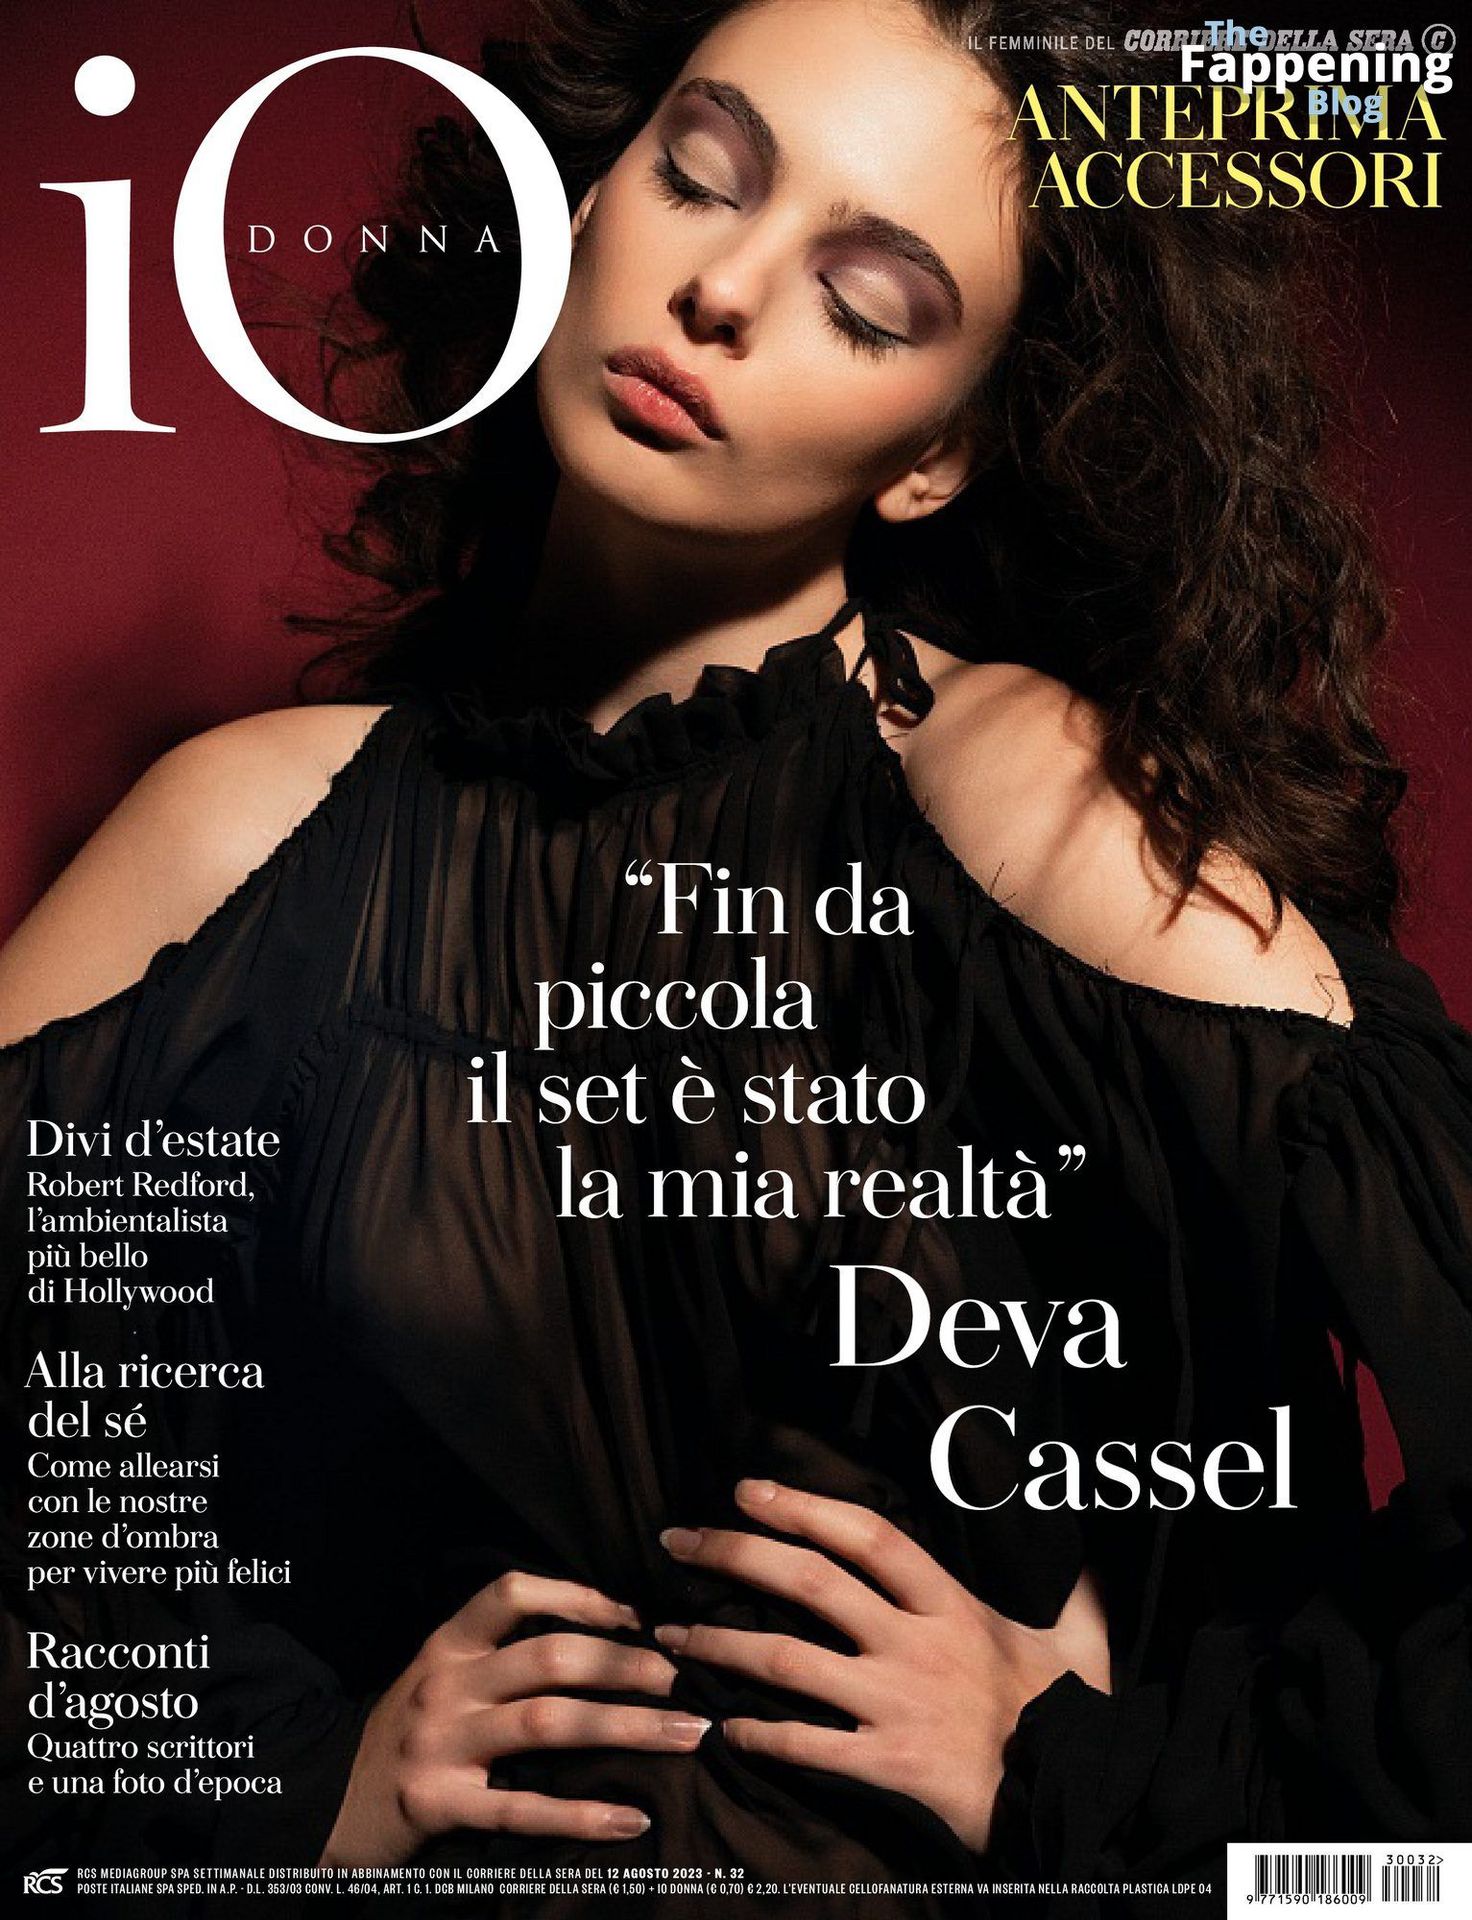 Deva Cassel Sexy – iO Donna (8 Photos)